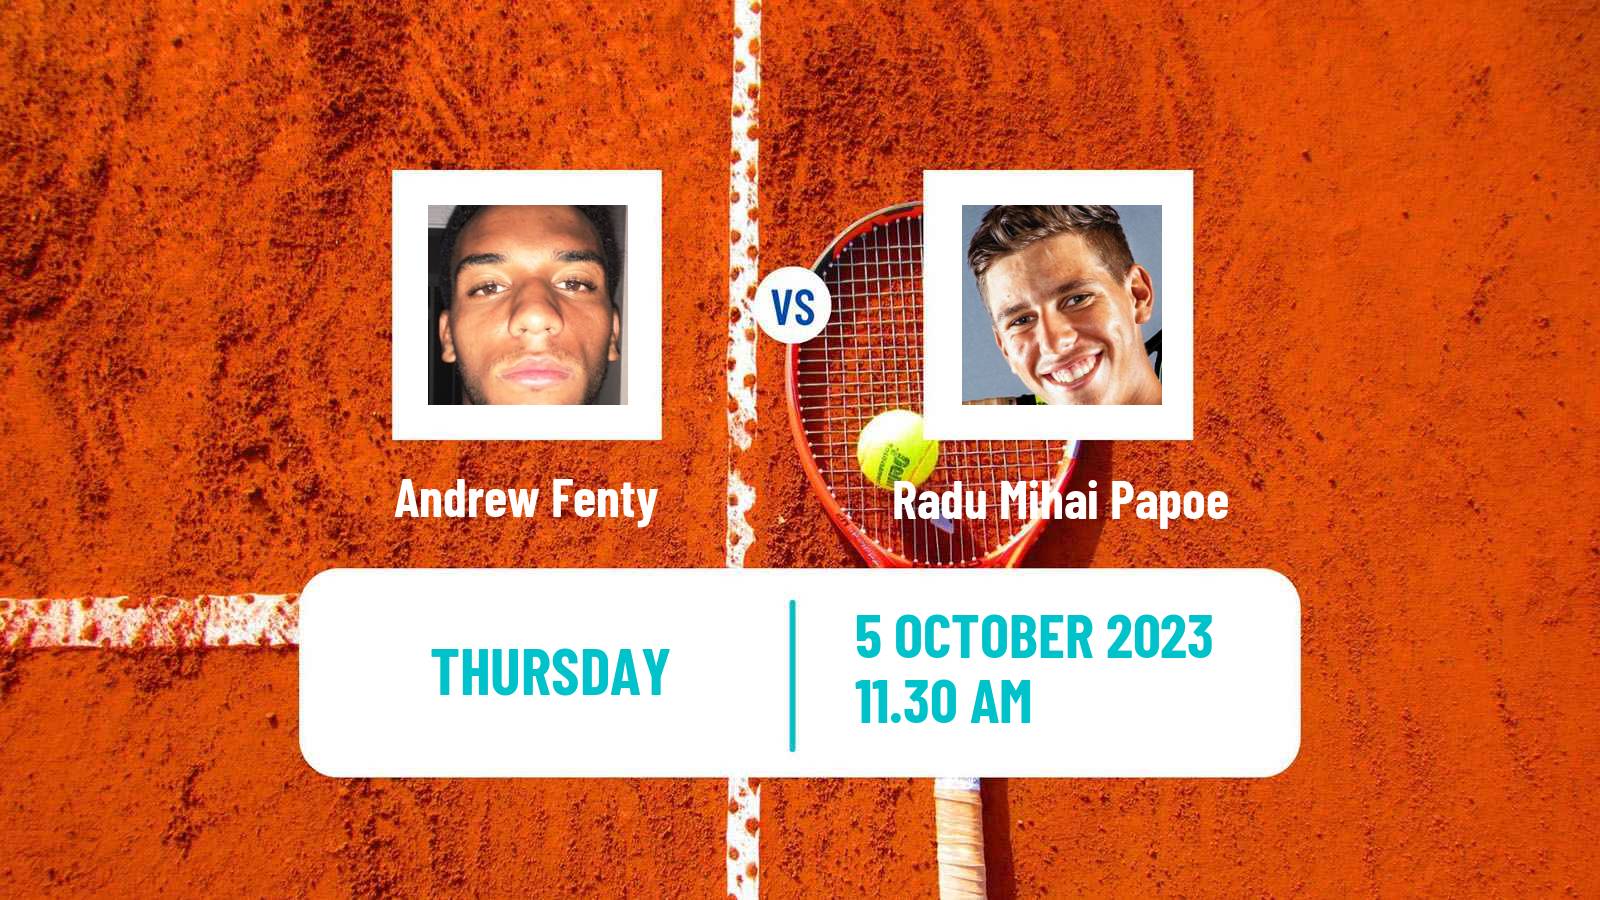 Tennis ITF M15 Ithaca Ny 2 Men Andrew Fenty - Radu Mihai Papoe